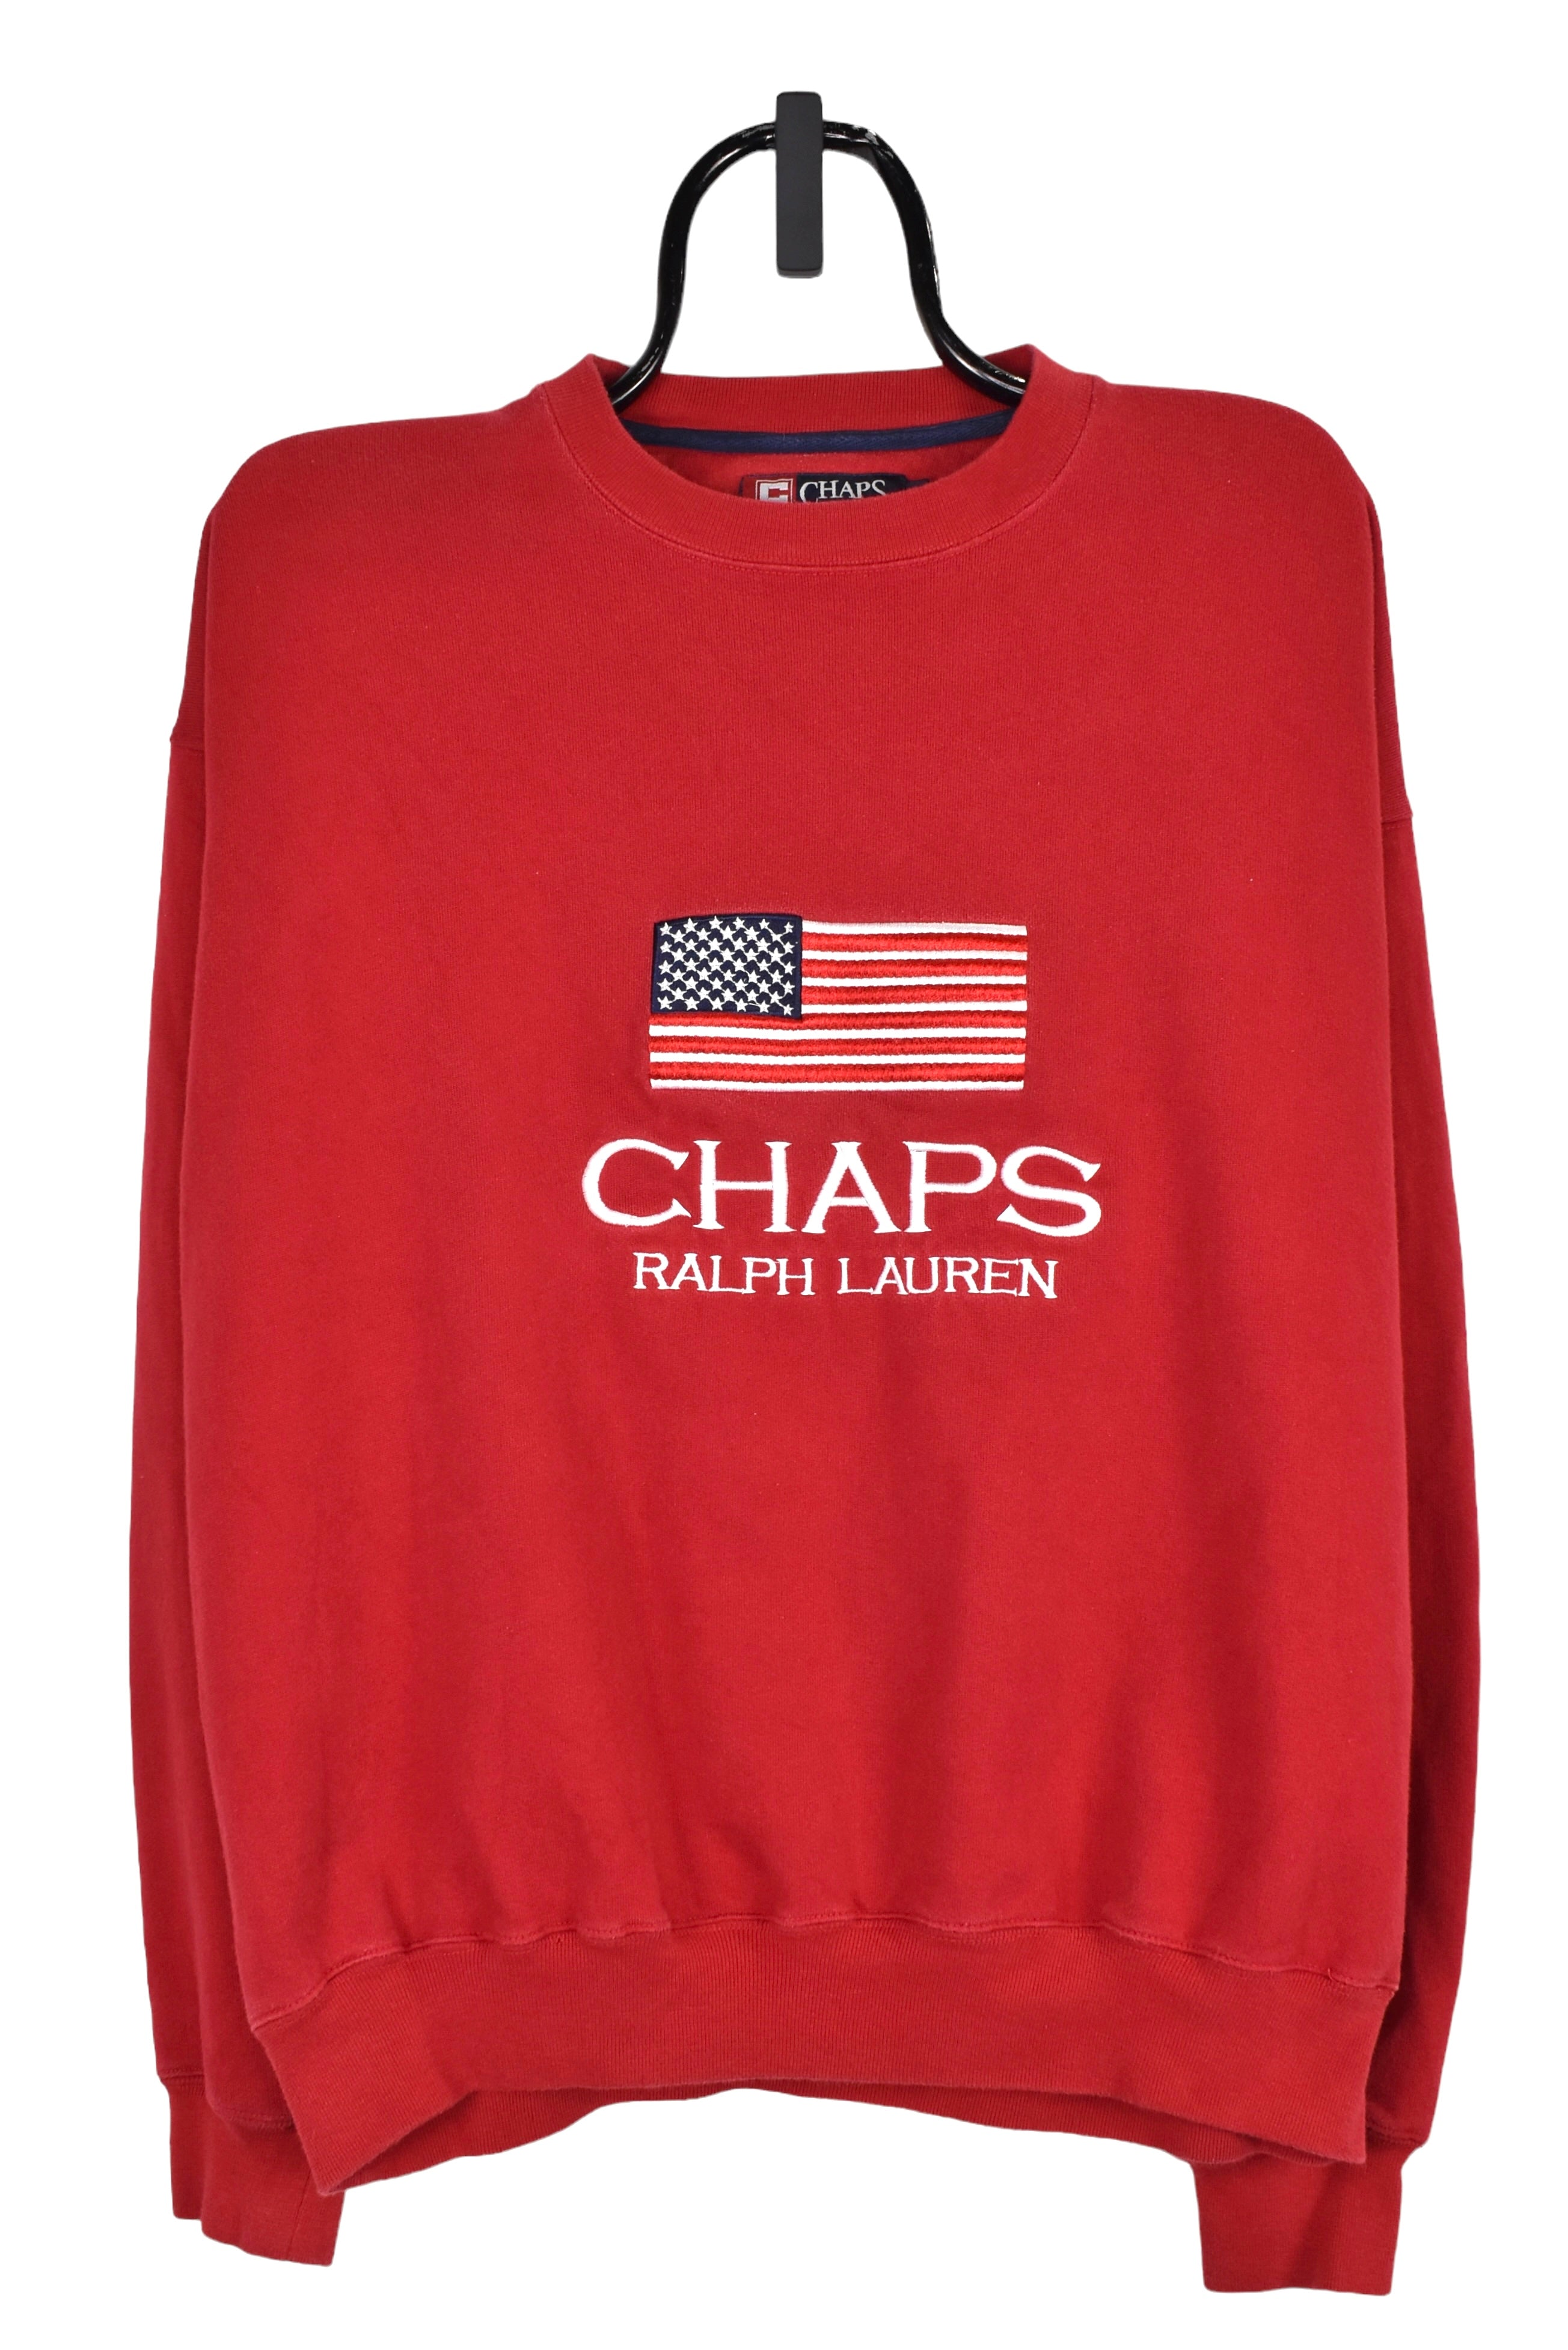 Vintage Ralph Lauren sweatshirt (XL), red embroidered crewneck